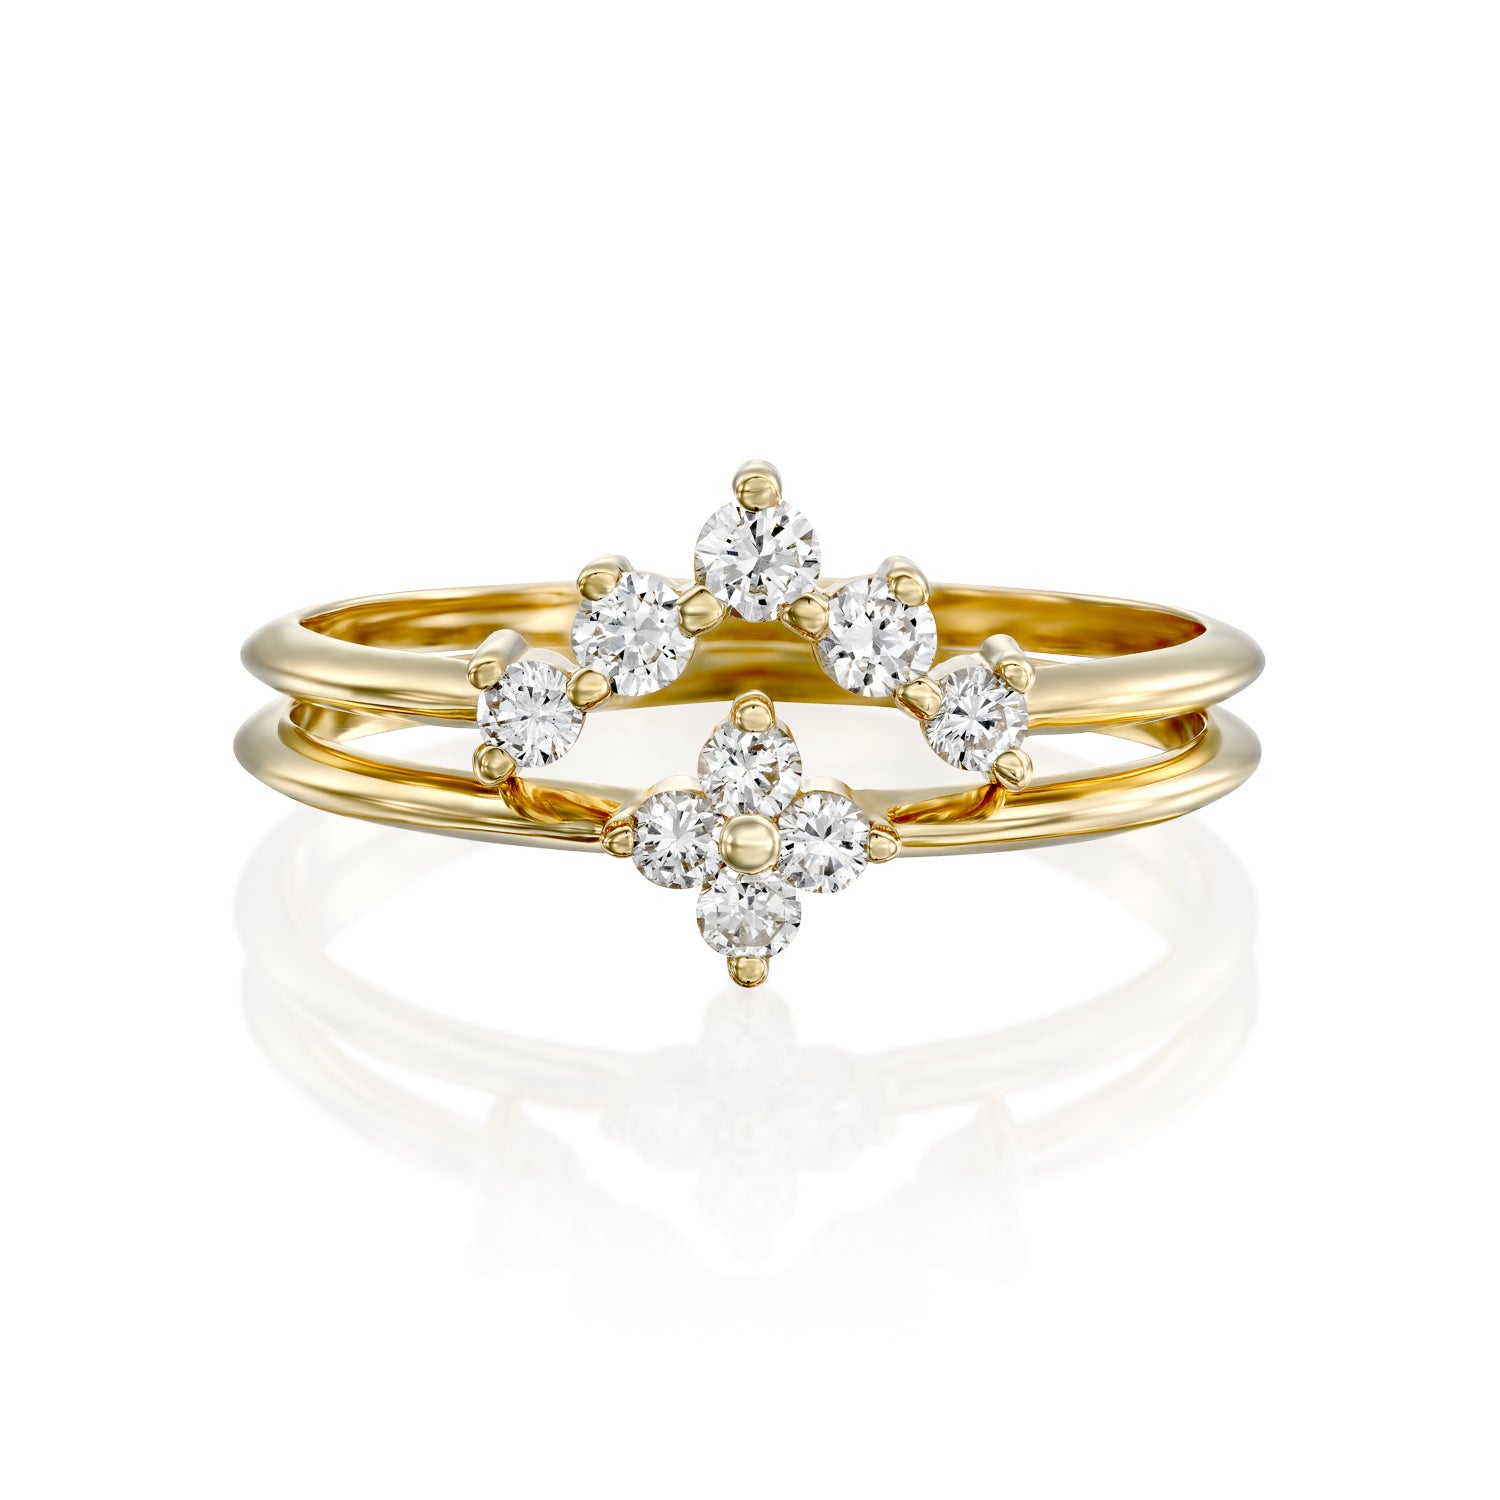 Harmon ring With White Diamonds